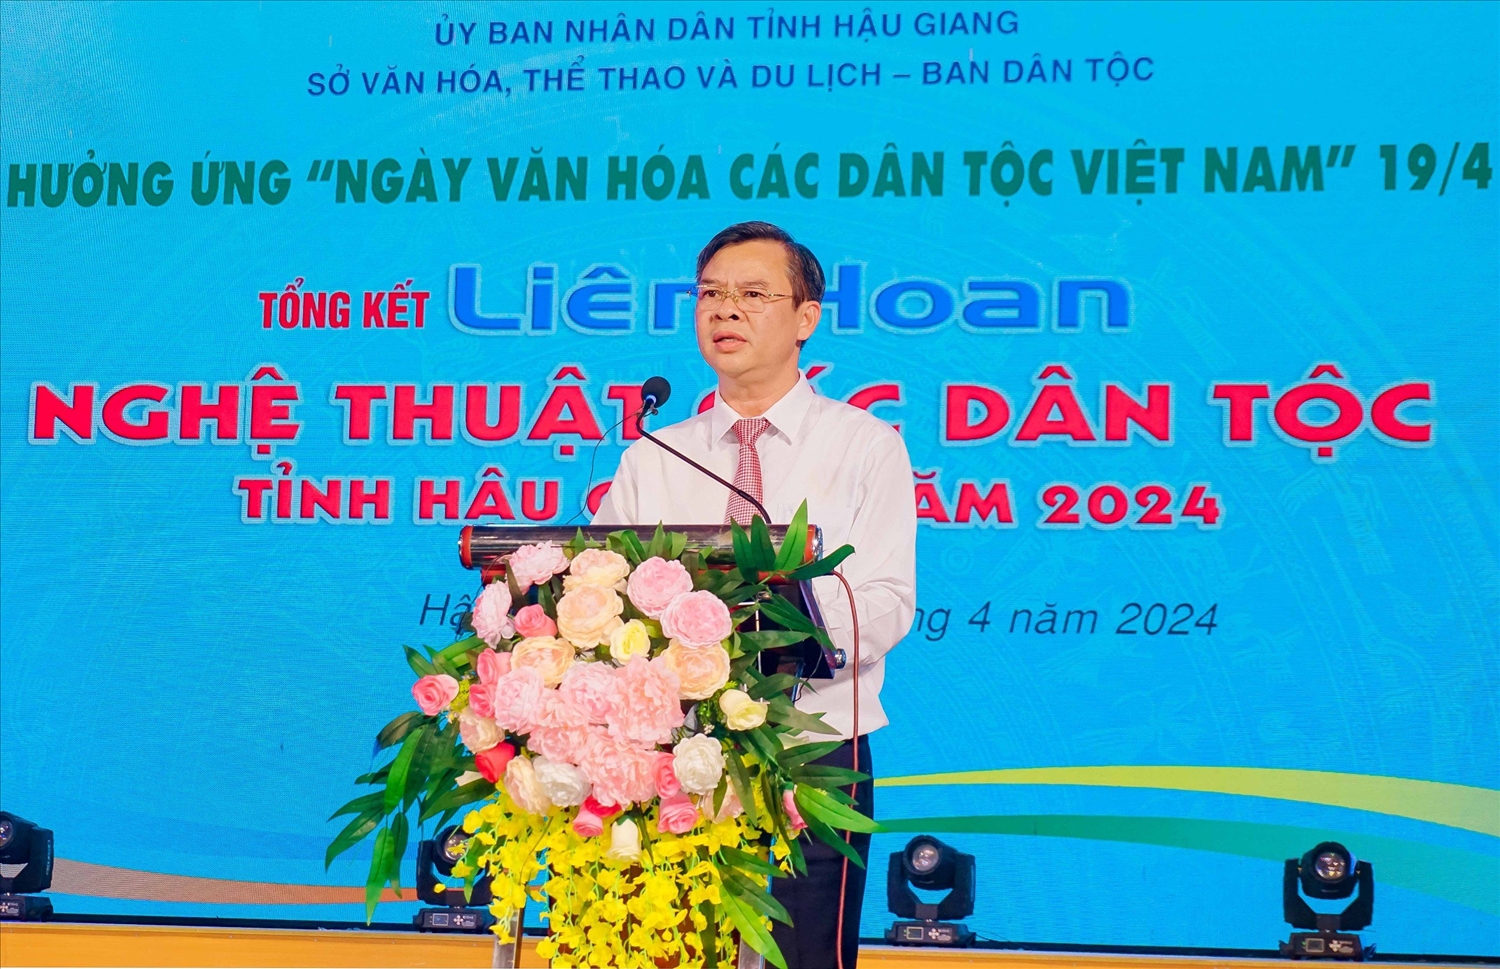 Phó Chủ tịch UBND tỉnh Hậu Giang Trương Cảnh Tuyên phát biểu Hưởng ứng “Ngày Văn hoá các dân tộc Việt Nam”